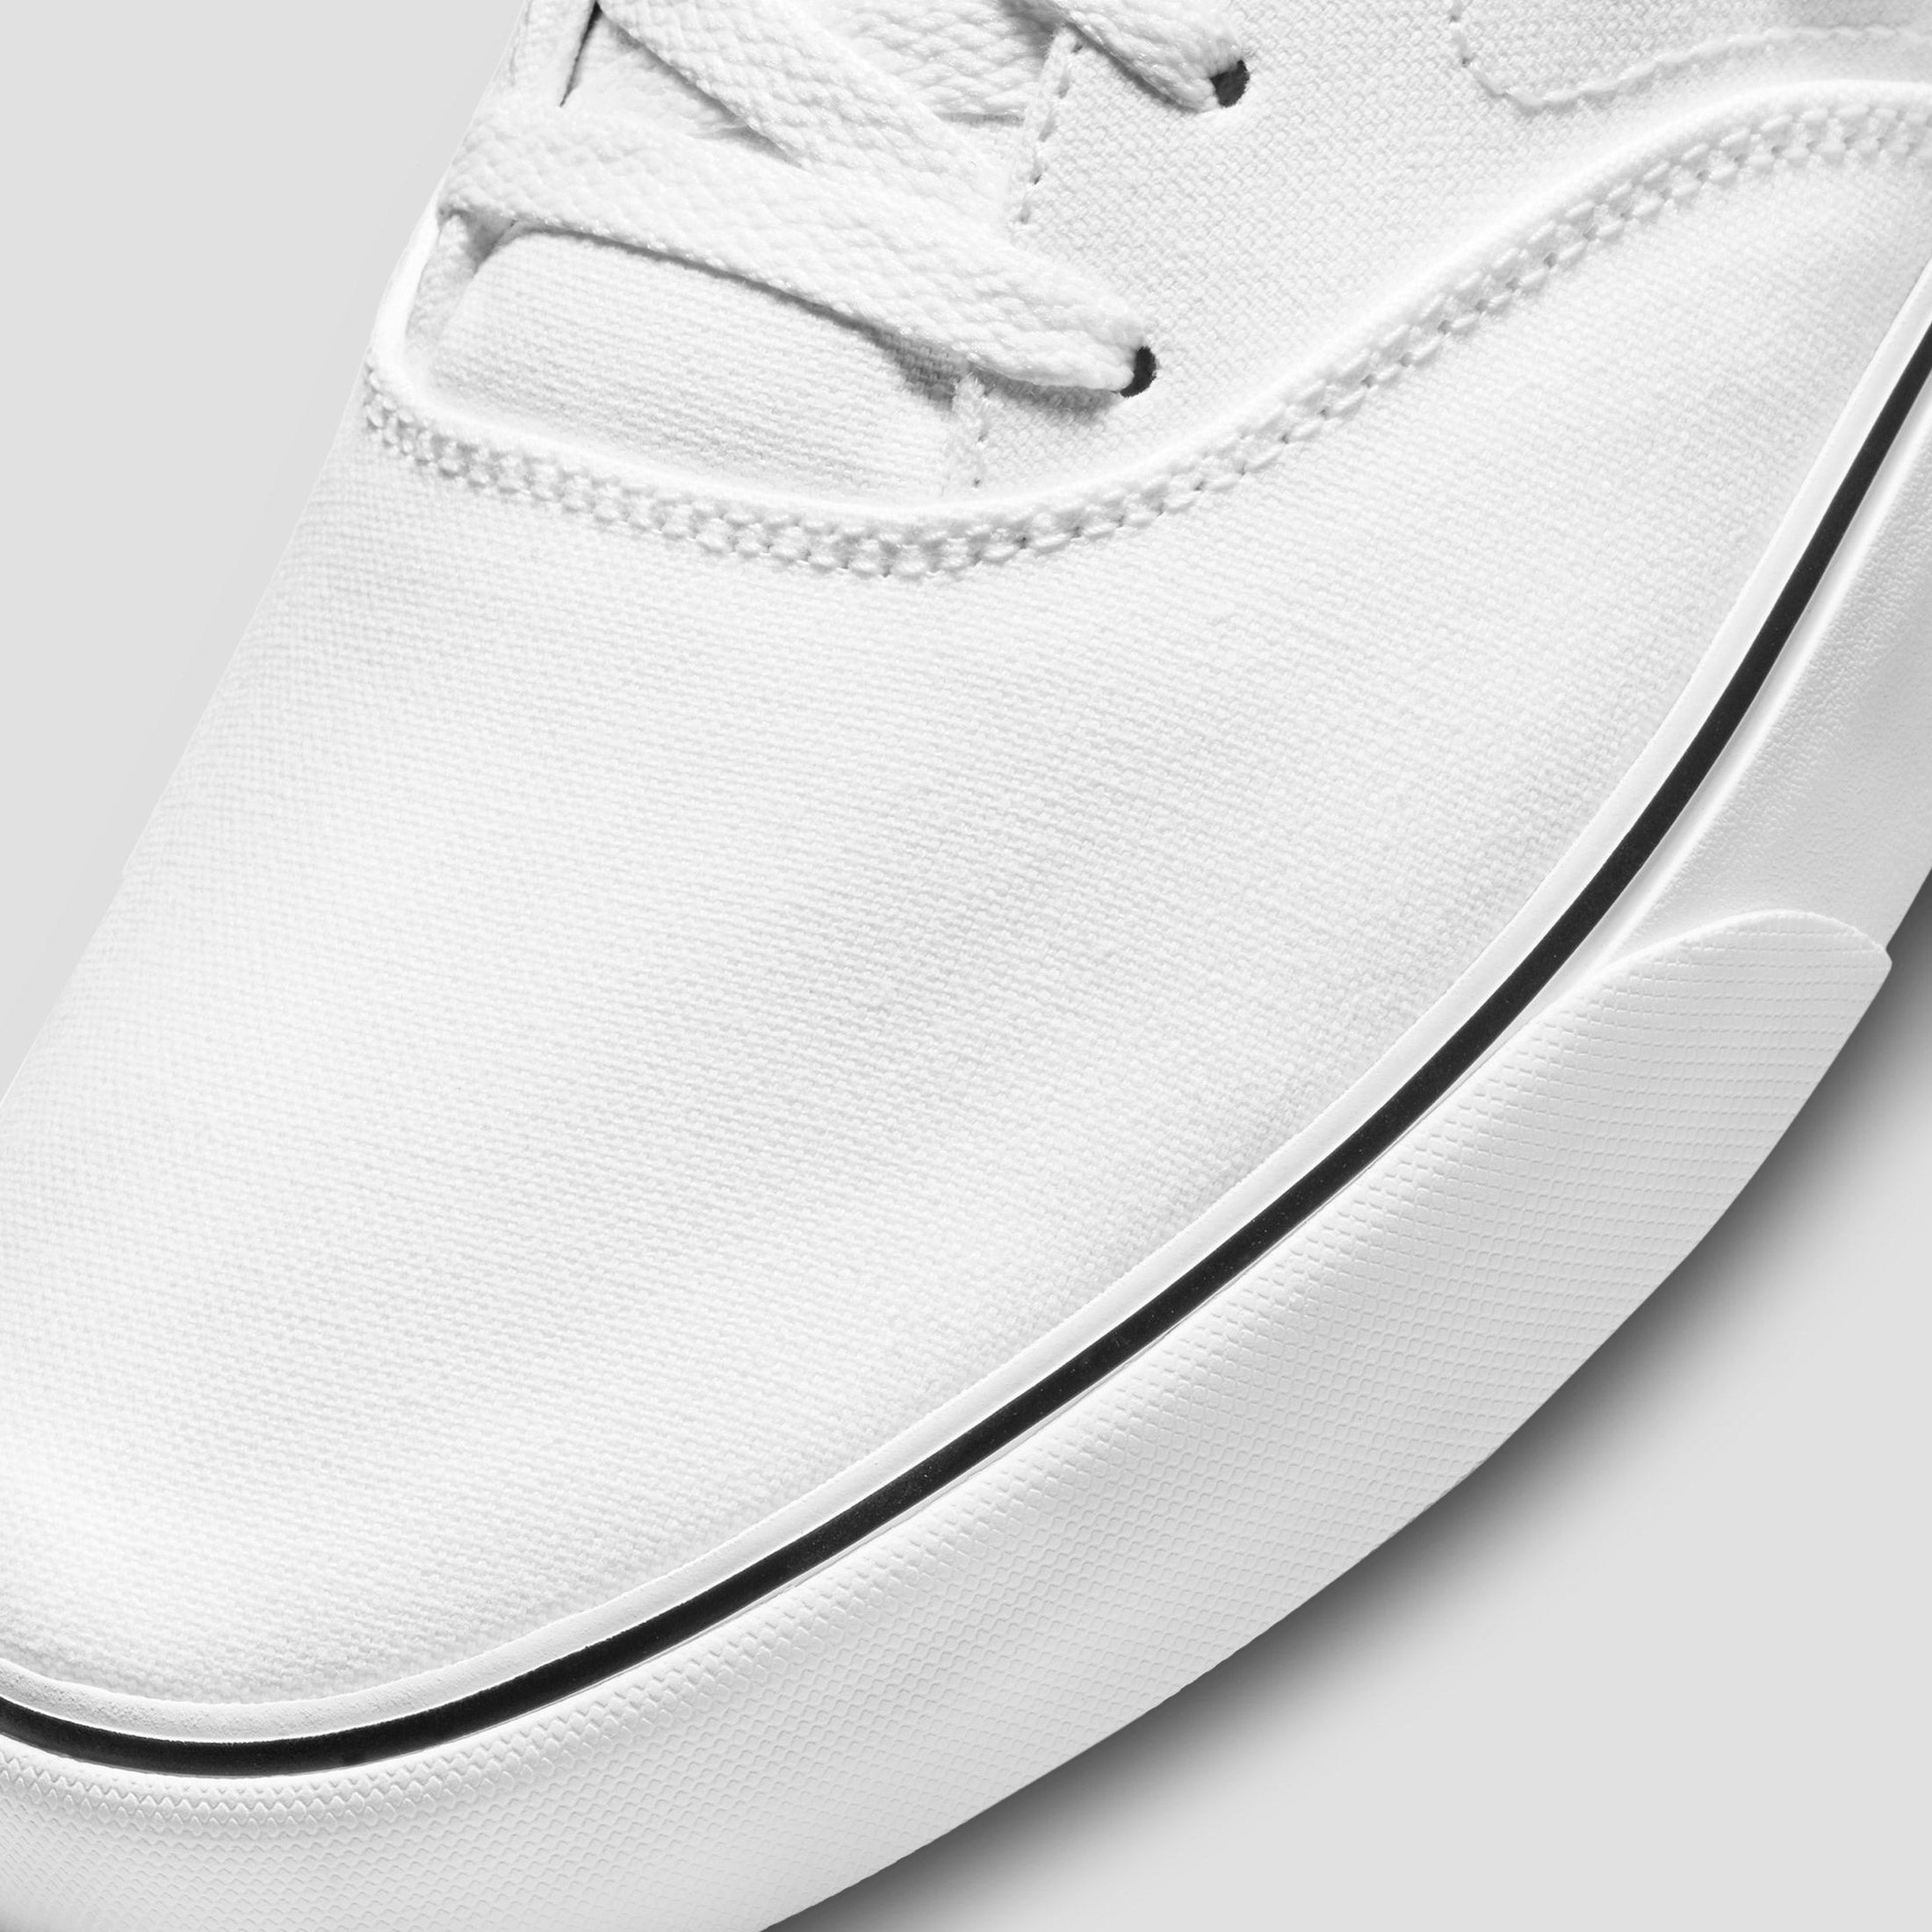 Nike SB Chron 2 Canvas Shoes White / Black / White